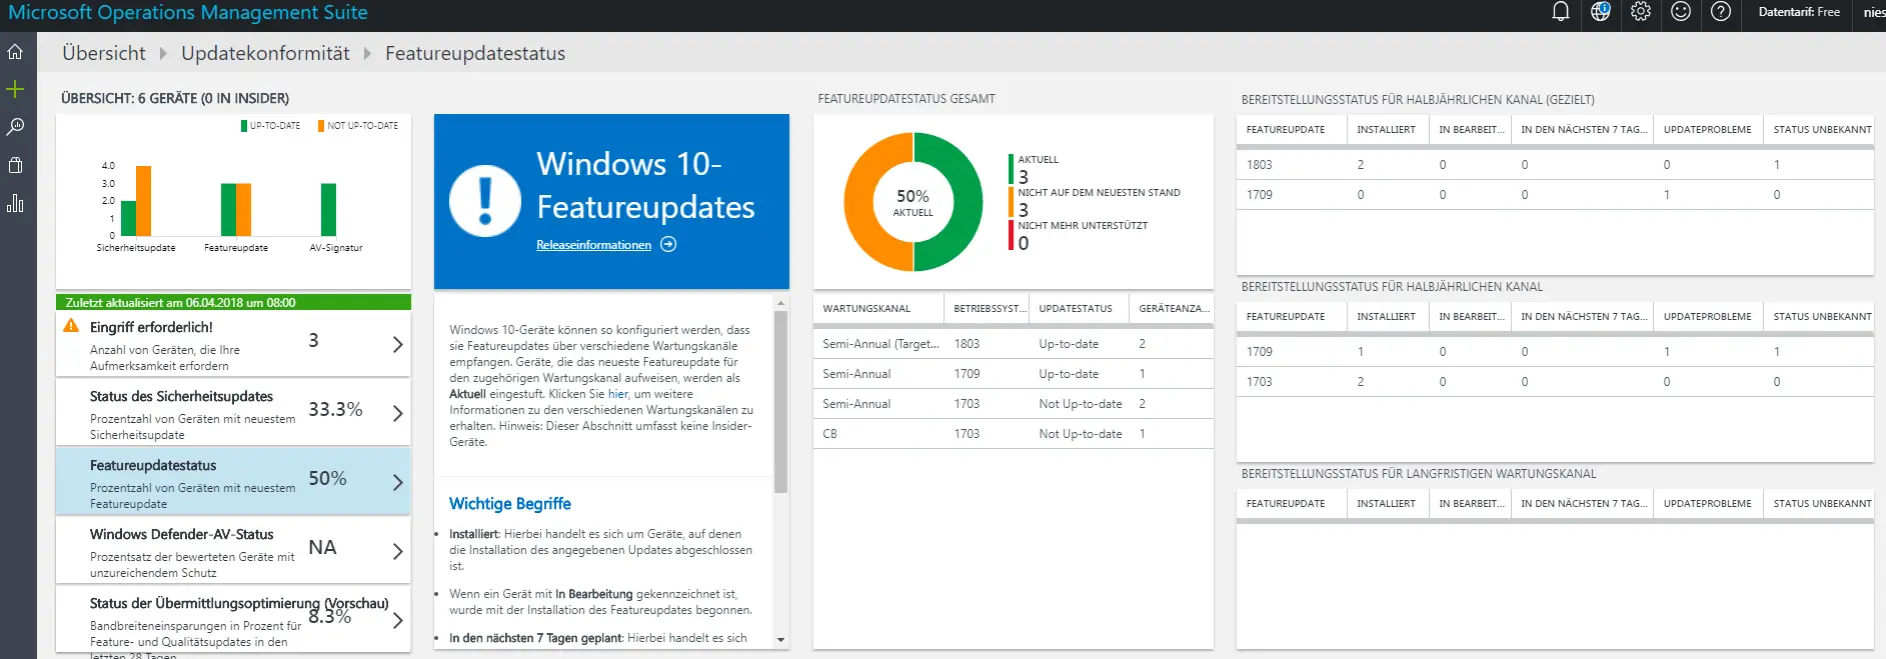 Windows Analytics Update Compliance - Featureupdatestatus